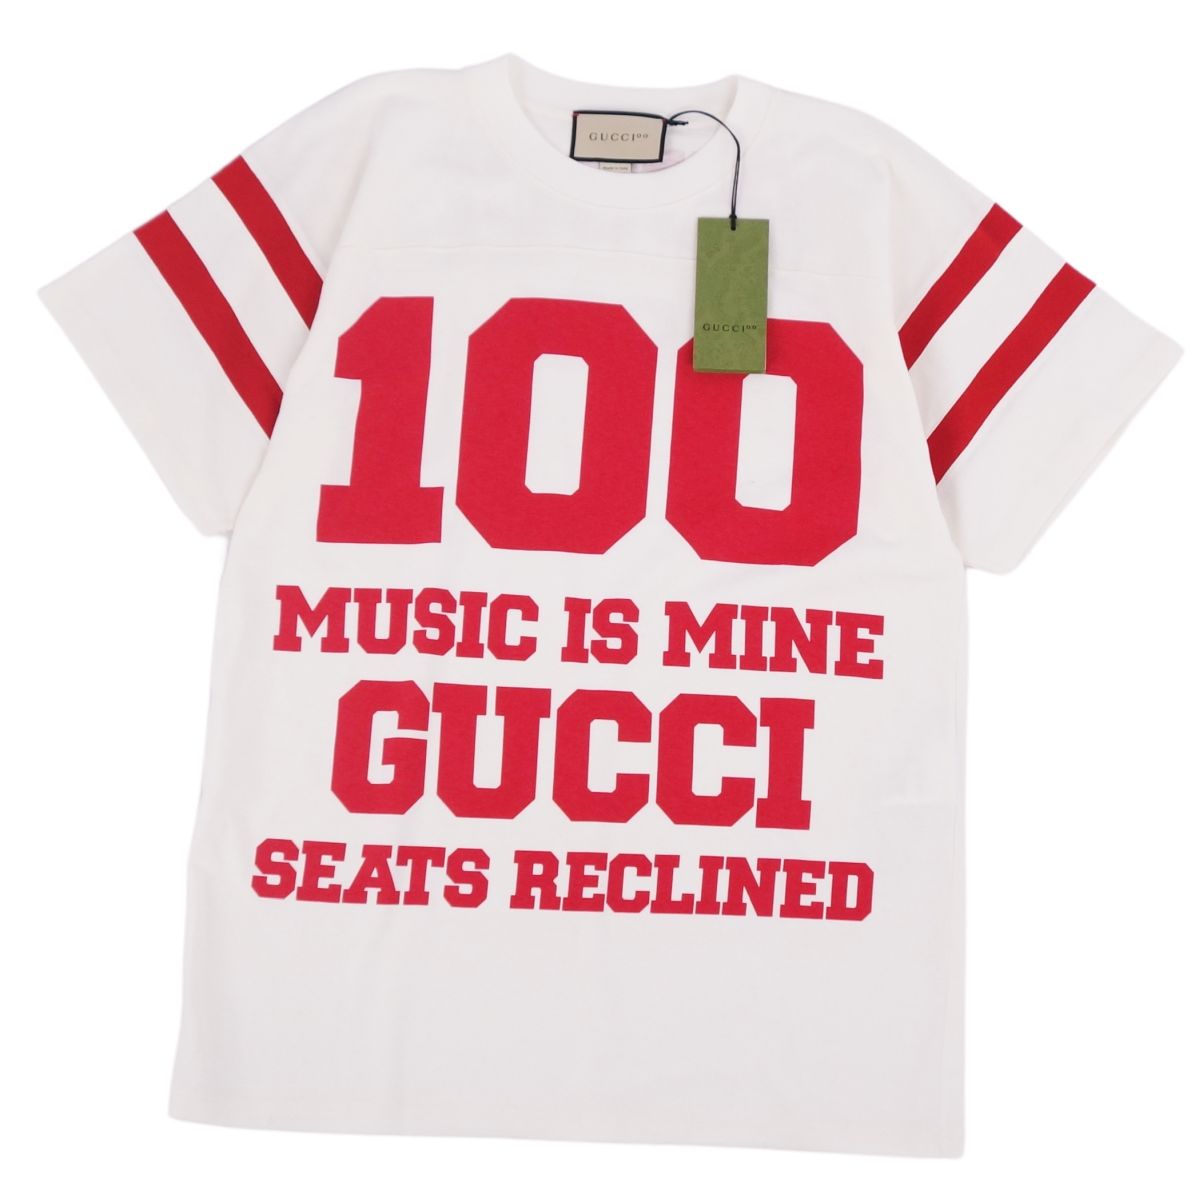 【新品同様】グッチ GUCCI Tシャツ カットソー 100周年 MUSIC IS MINE 半袖 ショートスリーブ ロゴ トップス メンズ XS ホワイト/レッド【中古】